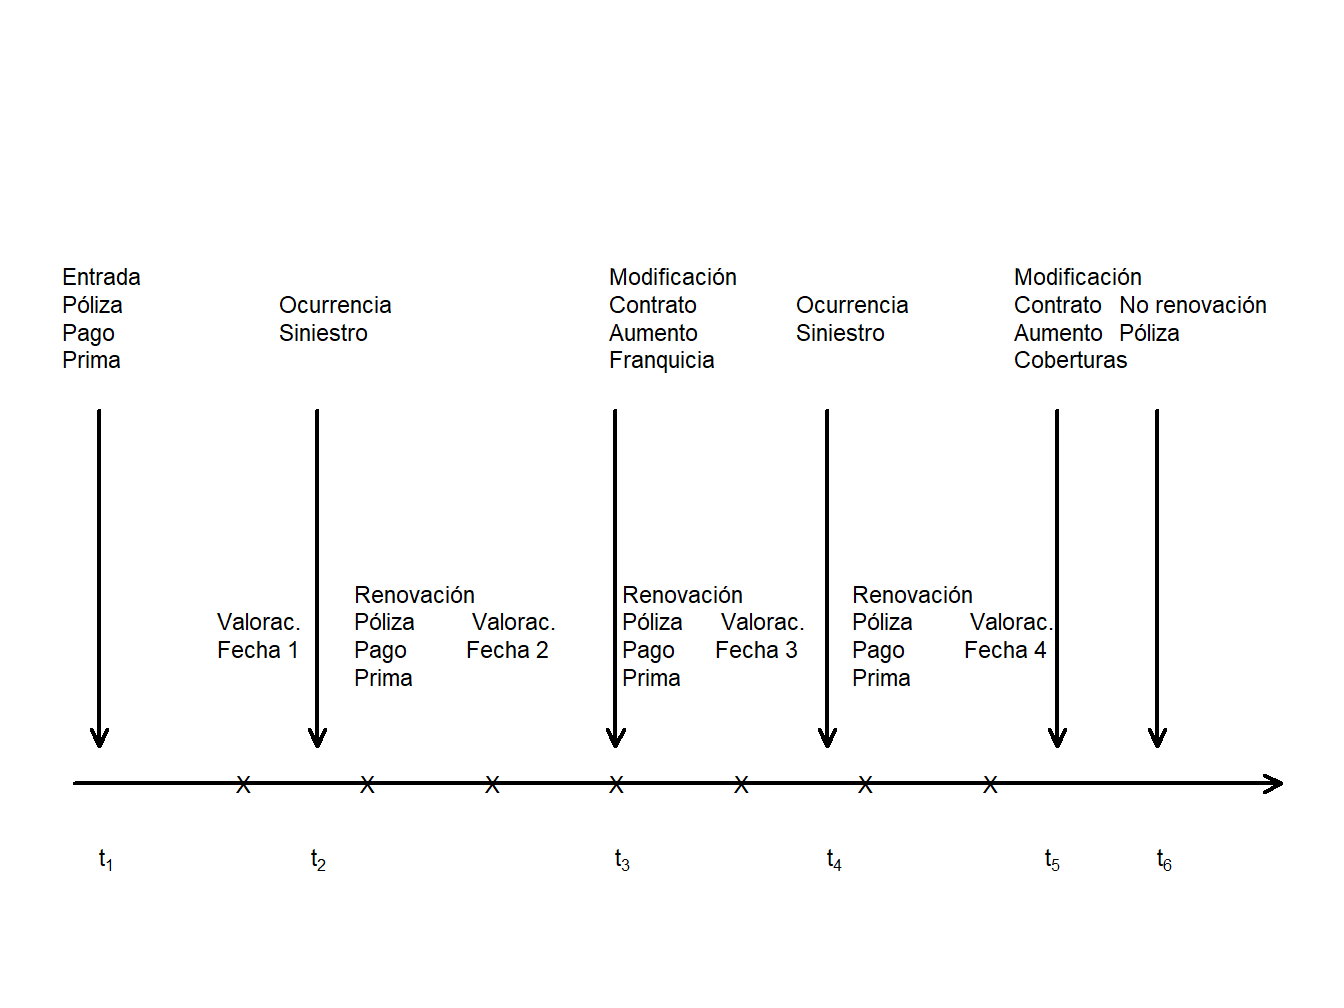 Cronograma de una póliza de seguro estándar. Las flechas marcan las ocurrencias de eventos aleatorios. Cada x marca el instante de los eventos programados que normalmente no son aleatorios.